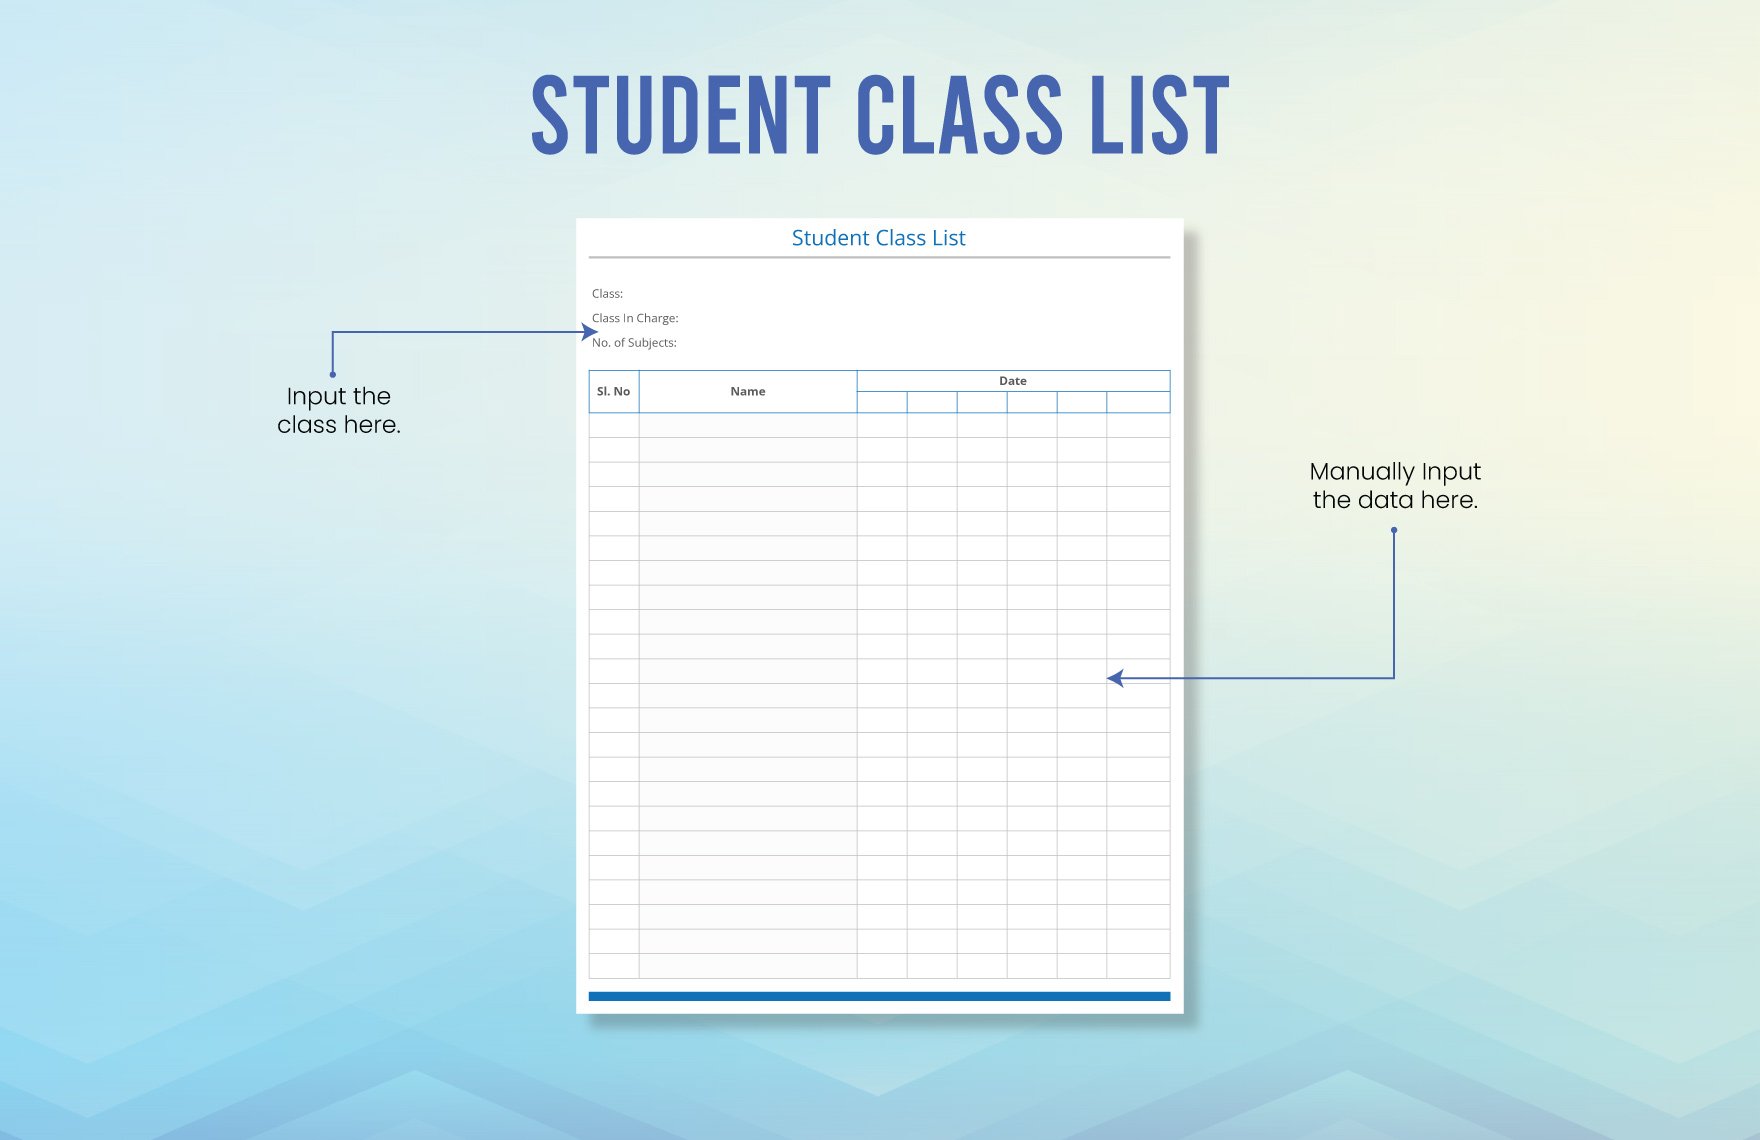 Student Class List Template